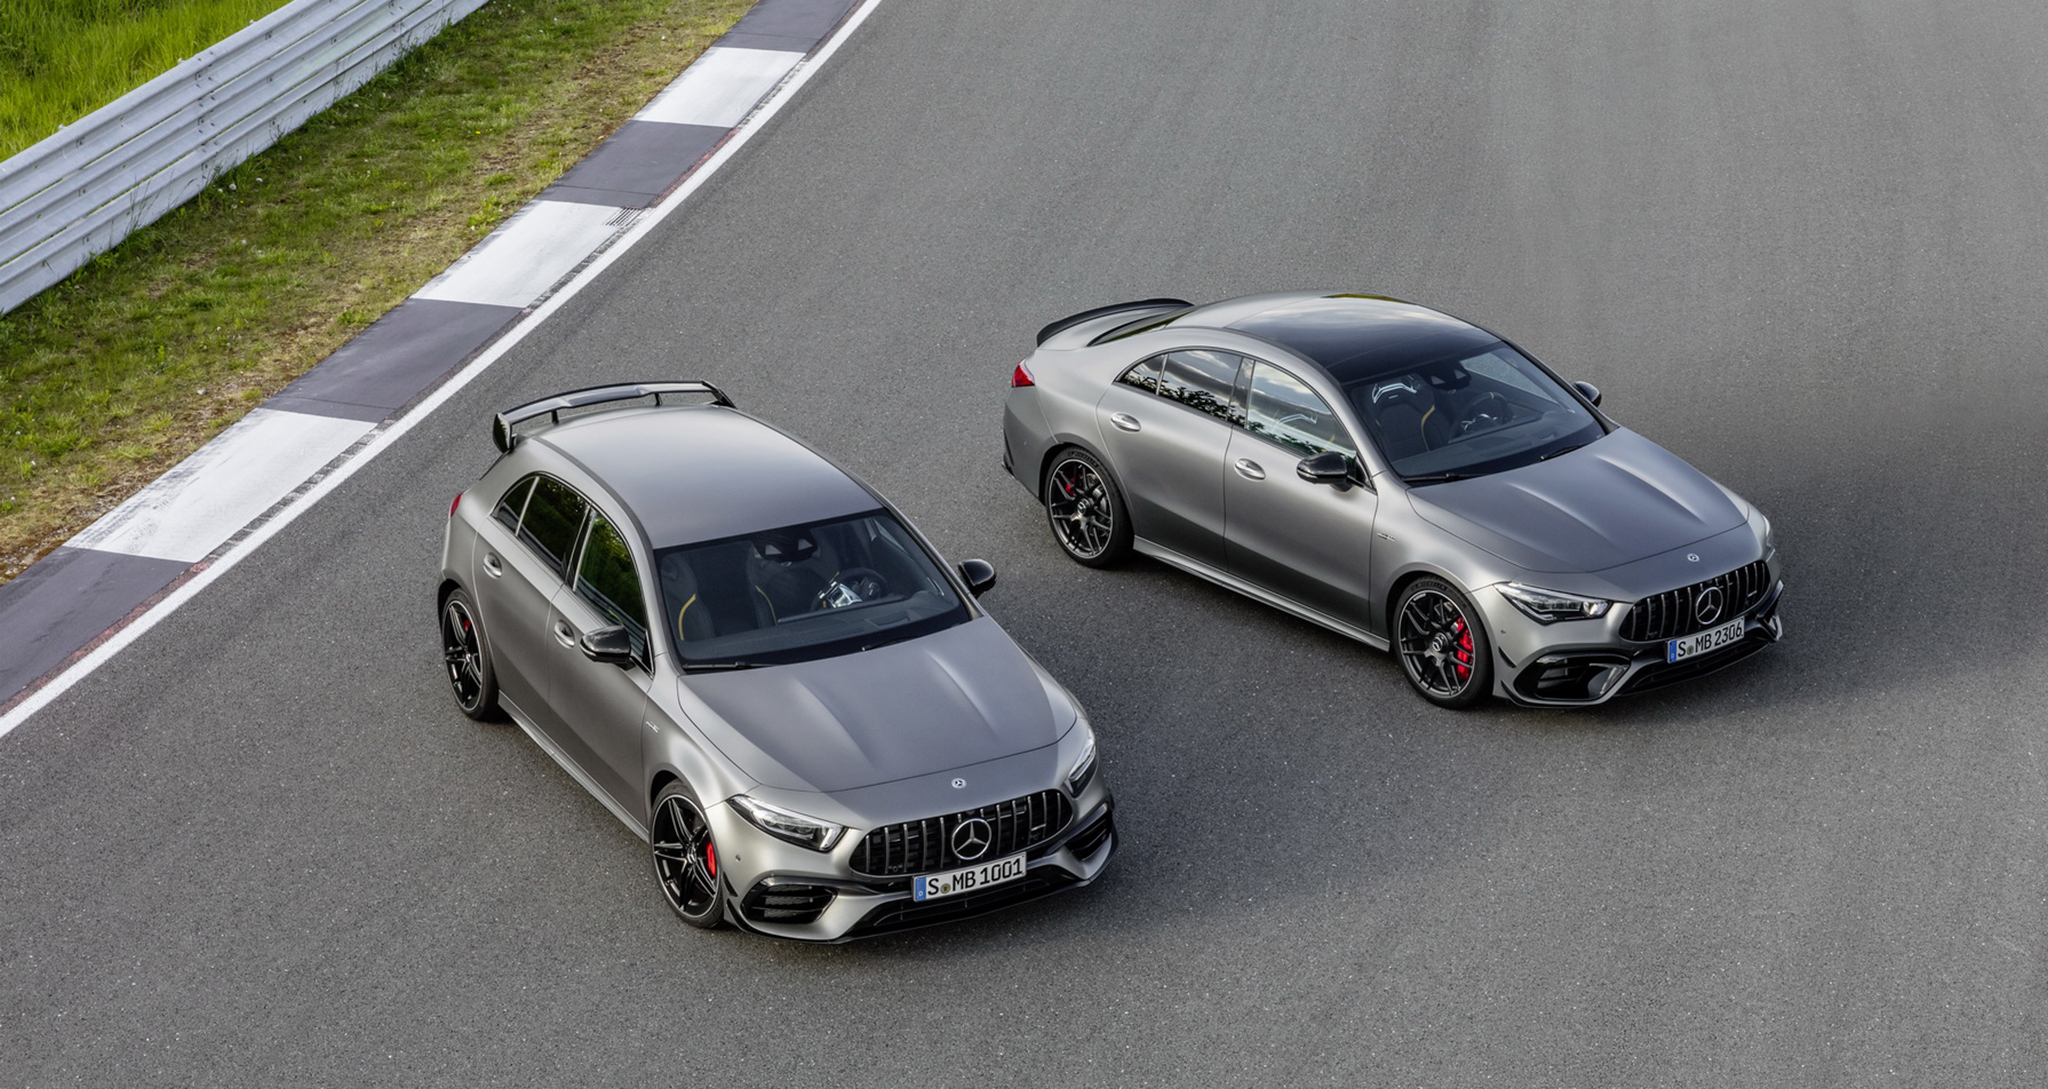 Ra mắt cặp đôi xe thể thao cỡ nhỏ Mercedes-AMG A45 và CLA45 2020